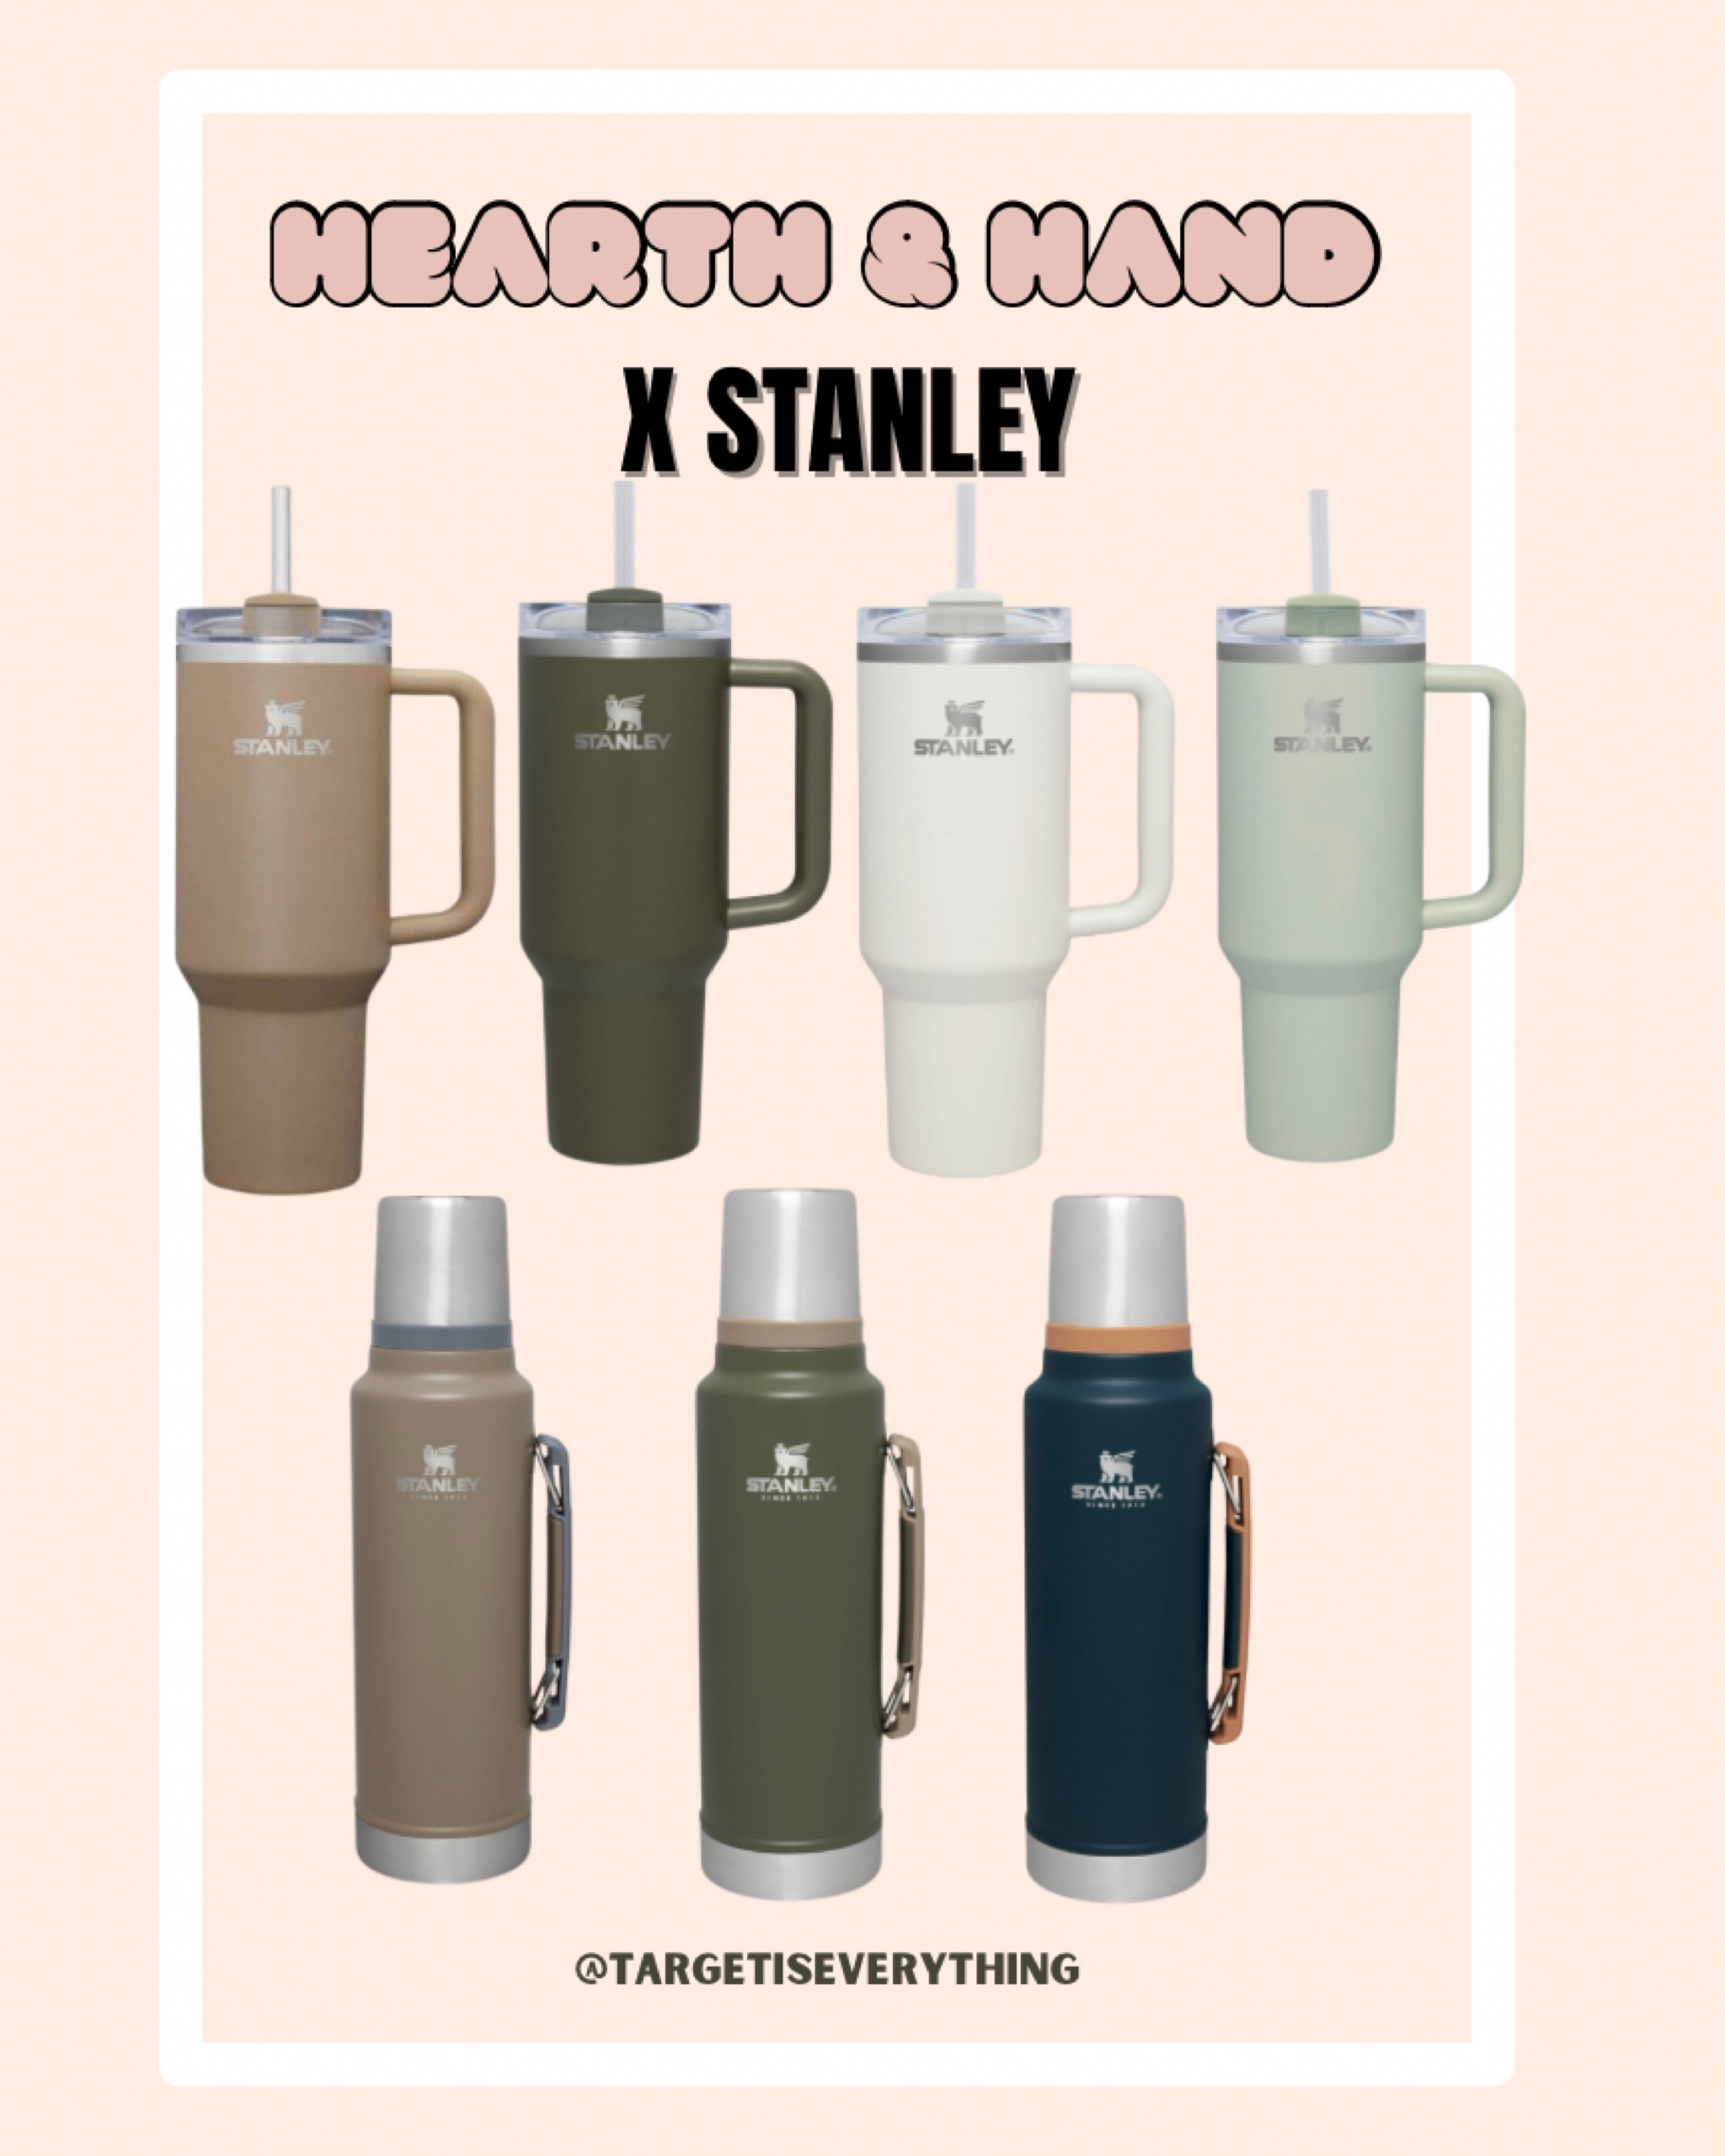 Stanley Quencher H2.0 40oz – everything kitchen